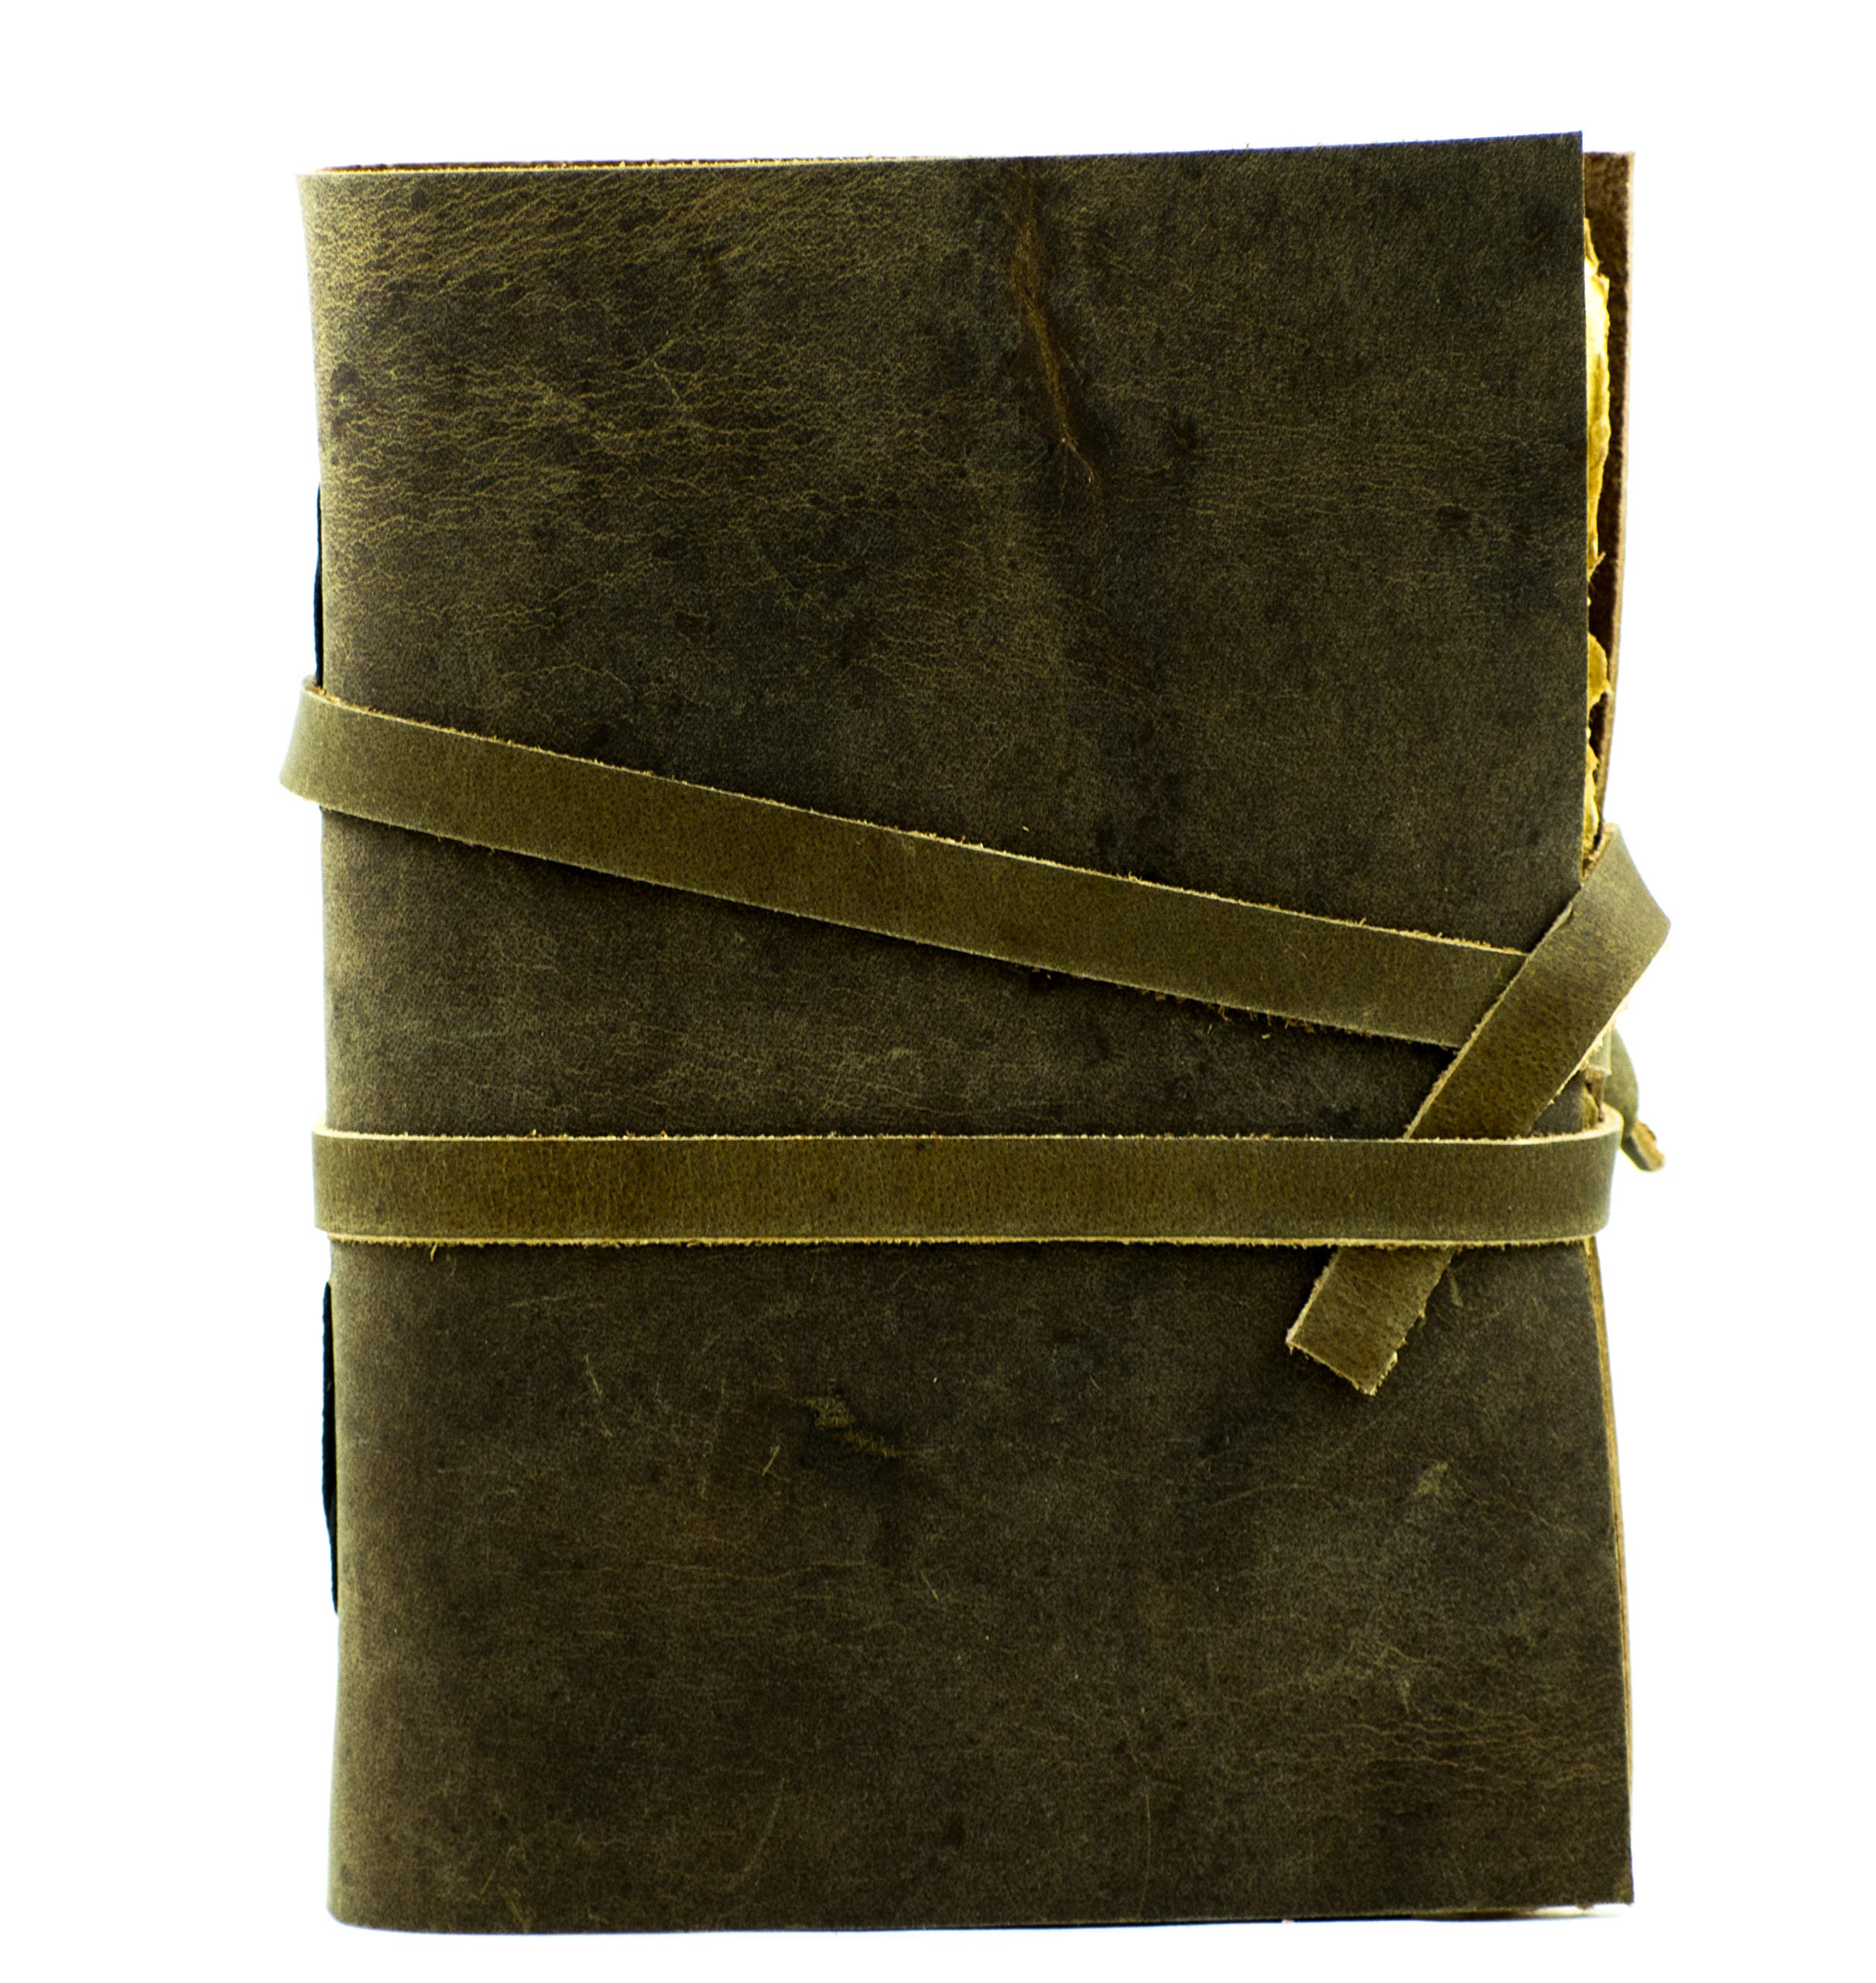 OVERDOSE Deckle Brown Vintage Leder Journal verbrannt Büttenrand Vintage Papier handgemacht gebunden schreiben Journal Organizer Planer Tagebuch 5X7 inches | 12 x 17 cm